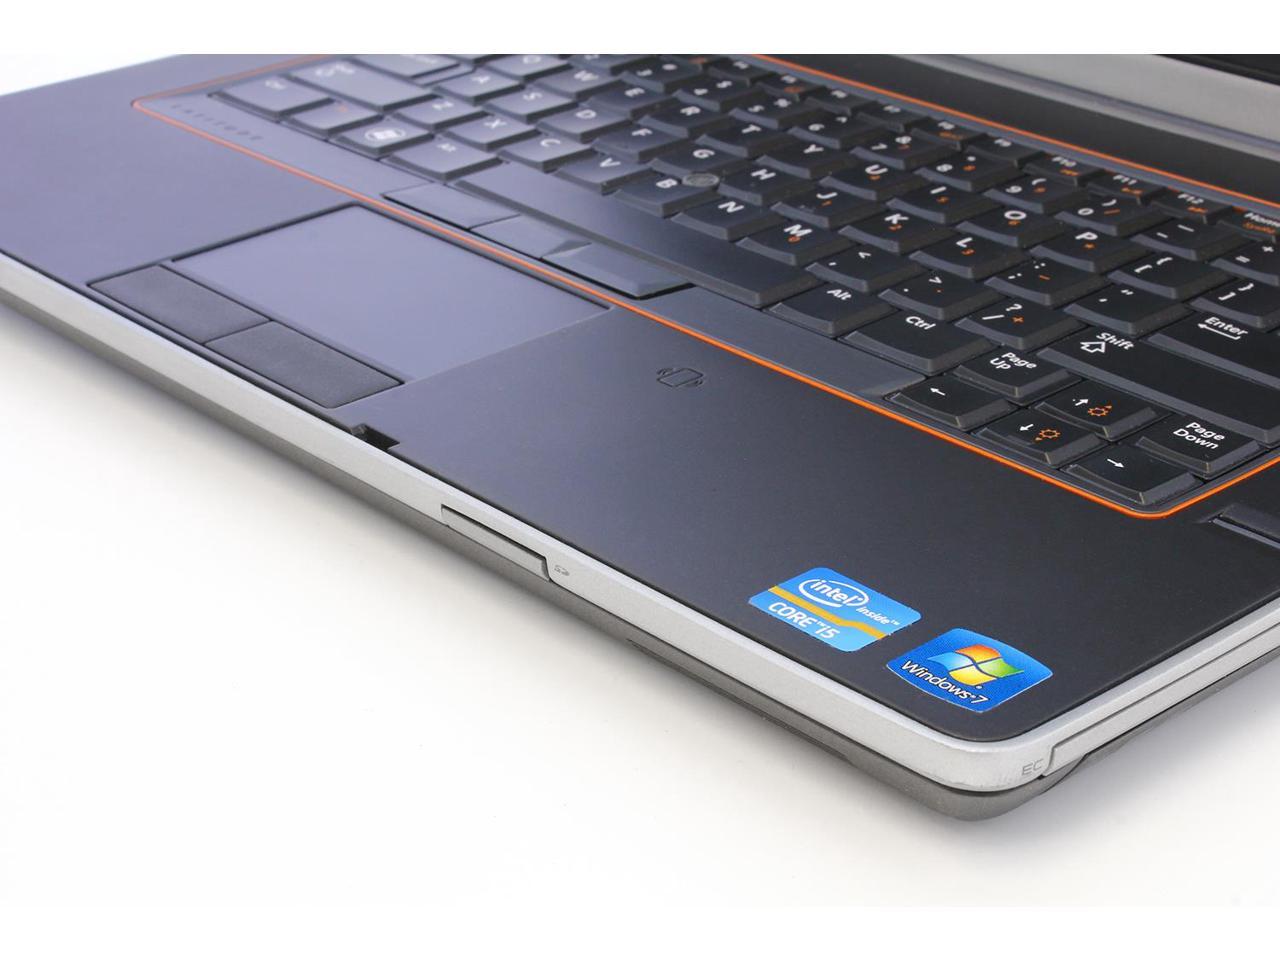 Refurbished: Dell Latitude E6420 Notebook Computer, Intel Core i5 2520M